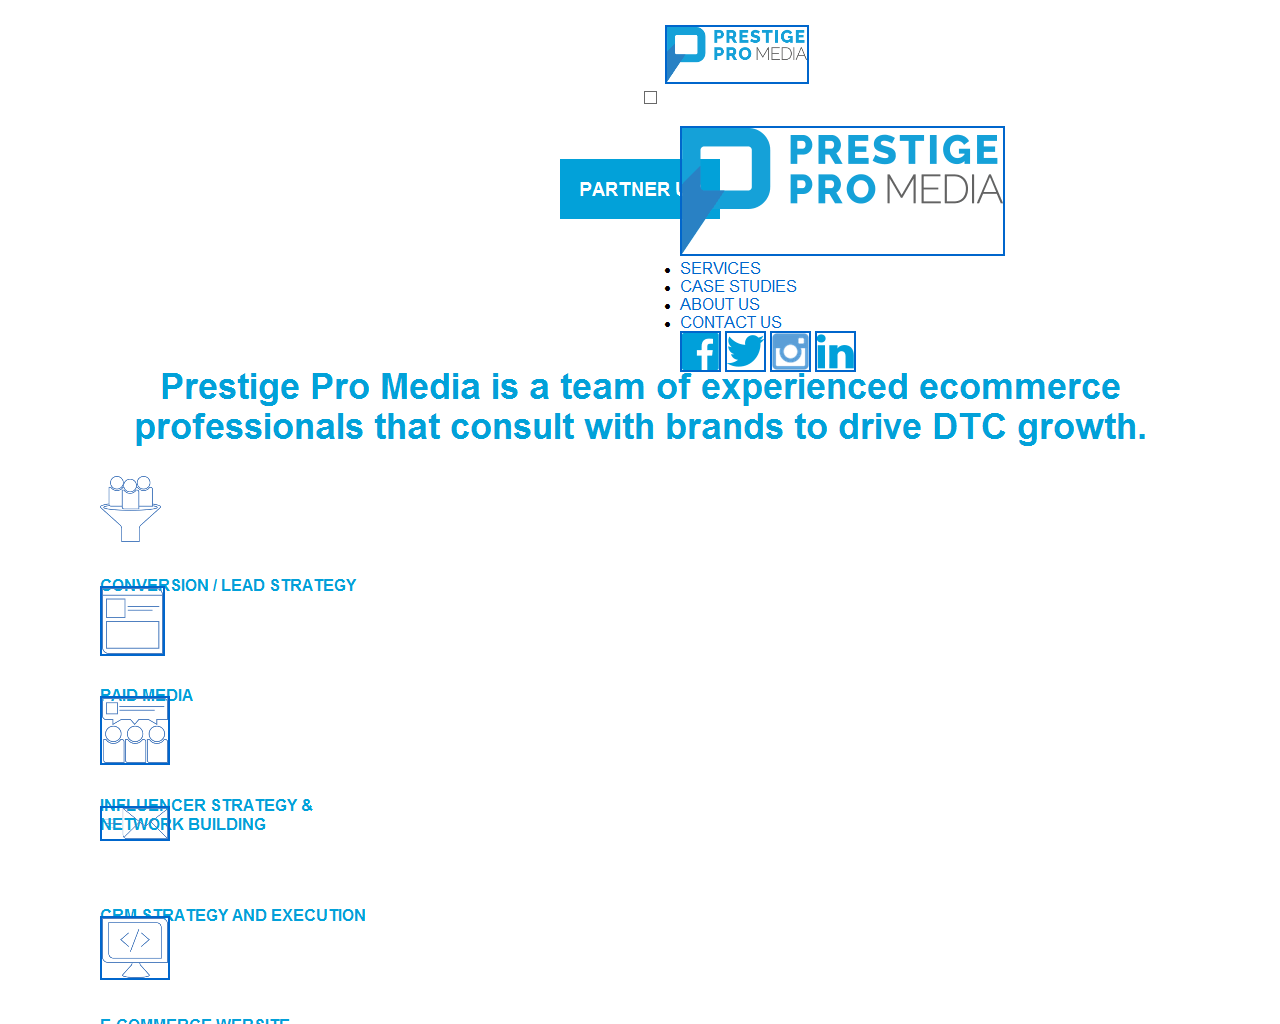 Prestige Pro Media